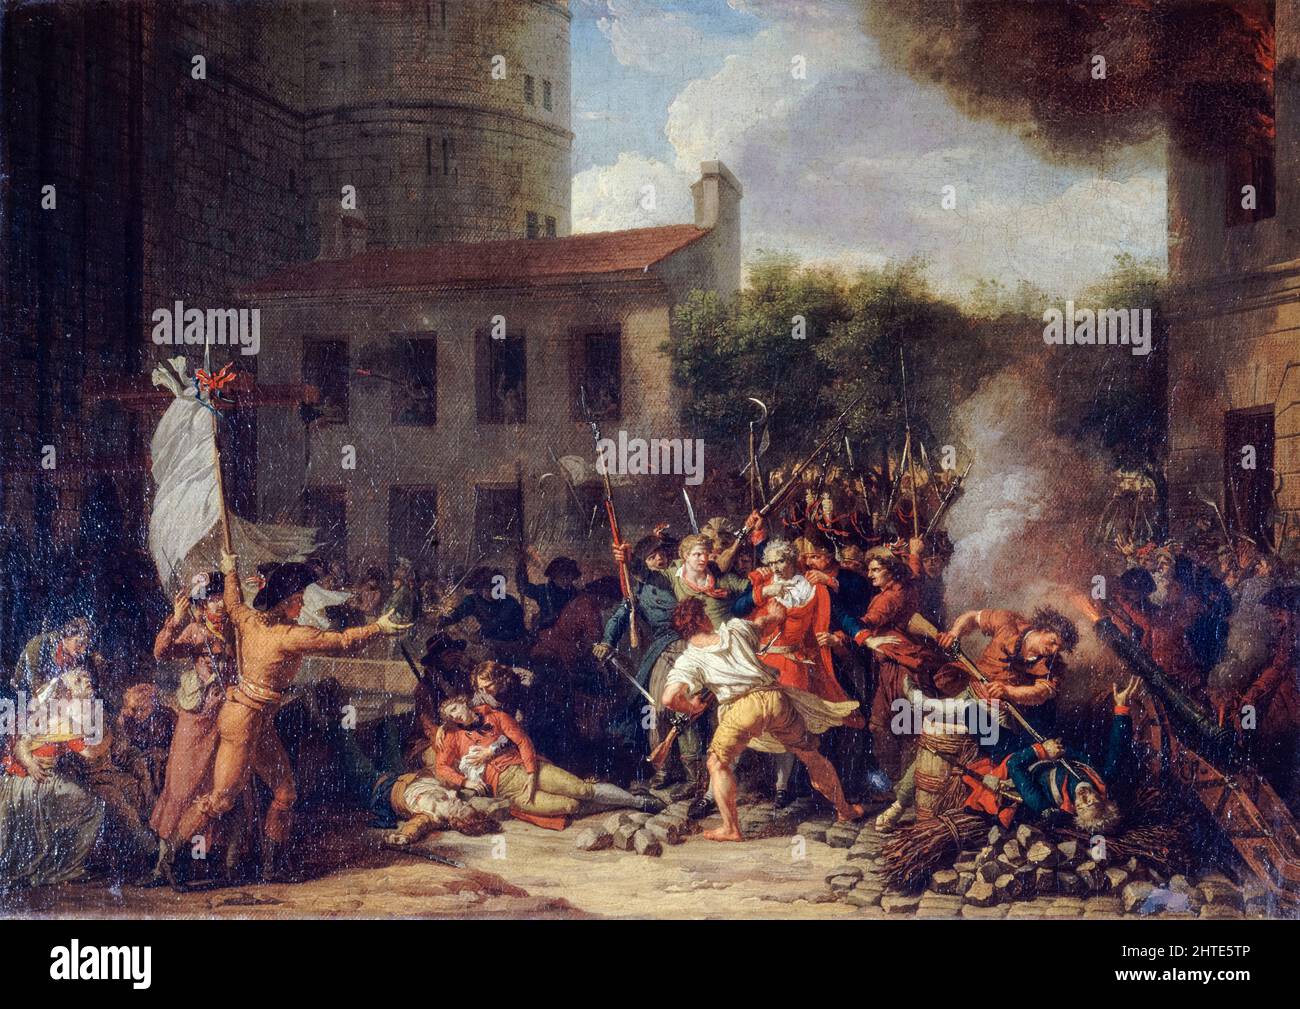 Der Sturm auf die Bastille, 14. 1789. Juli, die Verhaftung des Marquis de Launay, Öl auf Leinwand Gemälde von Charles Thévenin, 1793 Stockfoto